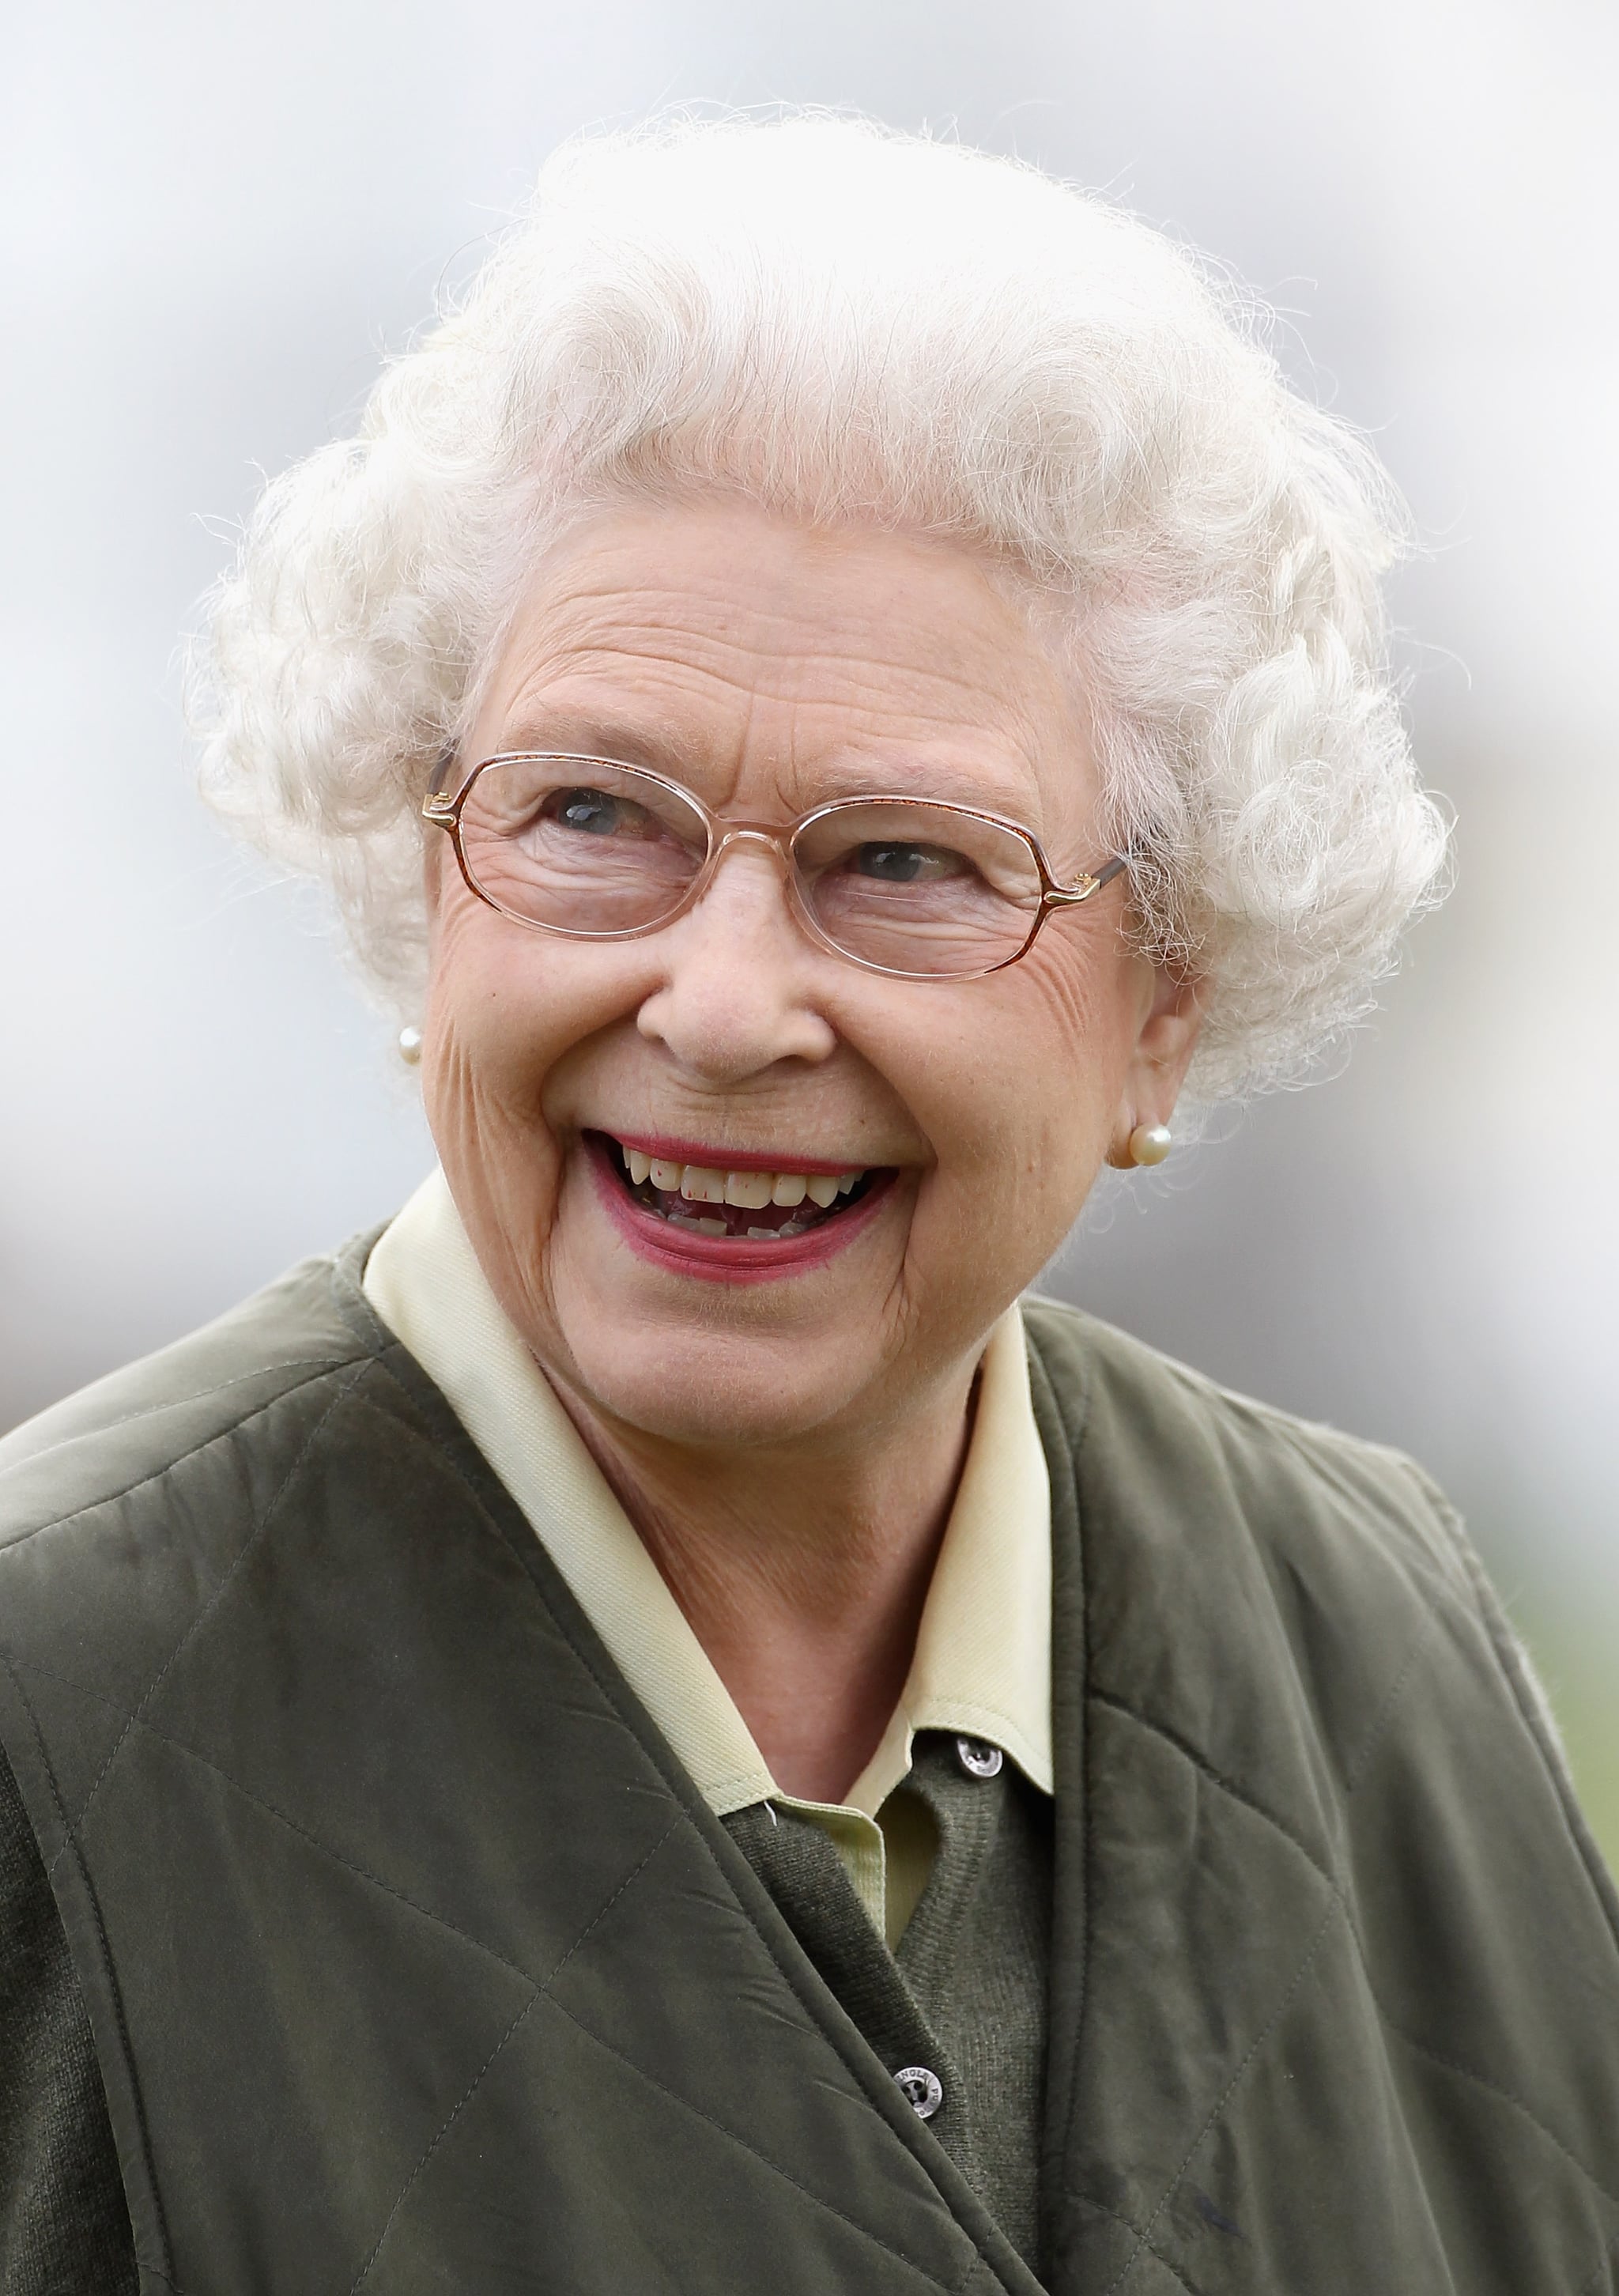 Queen Elizabeth II attends Windsor Horse Show in 2011